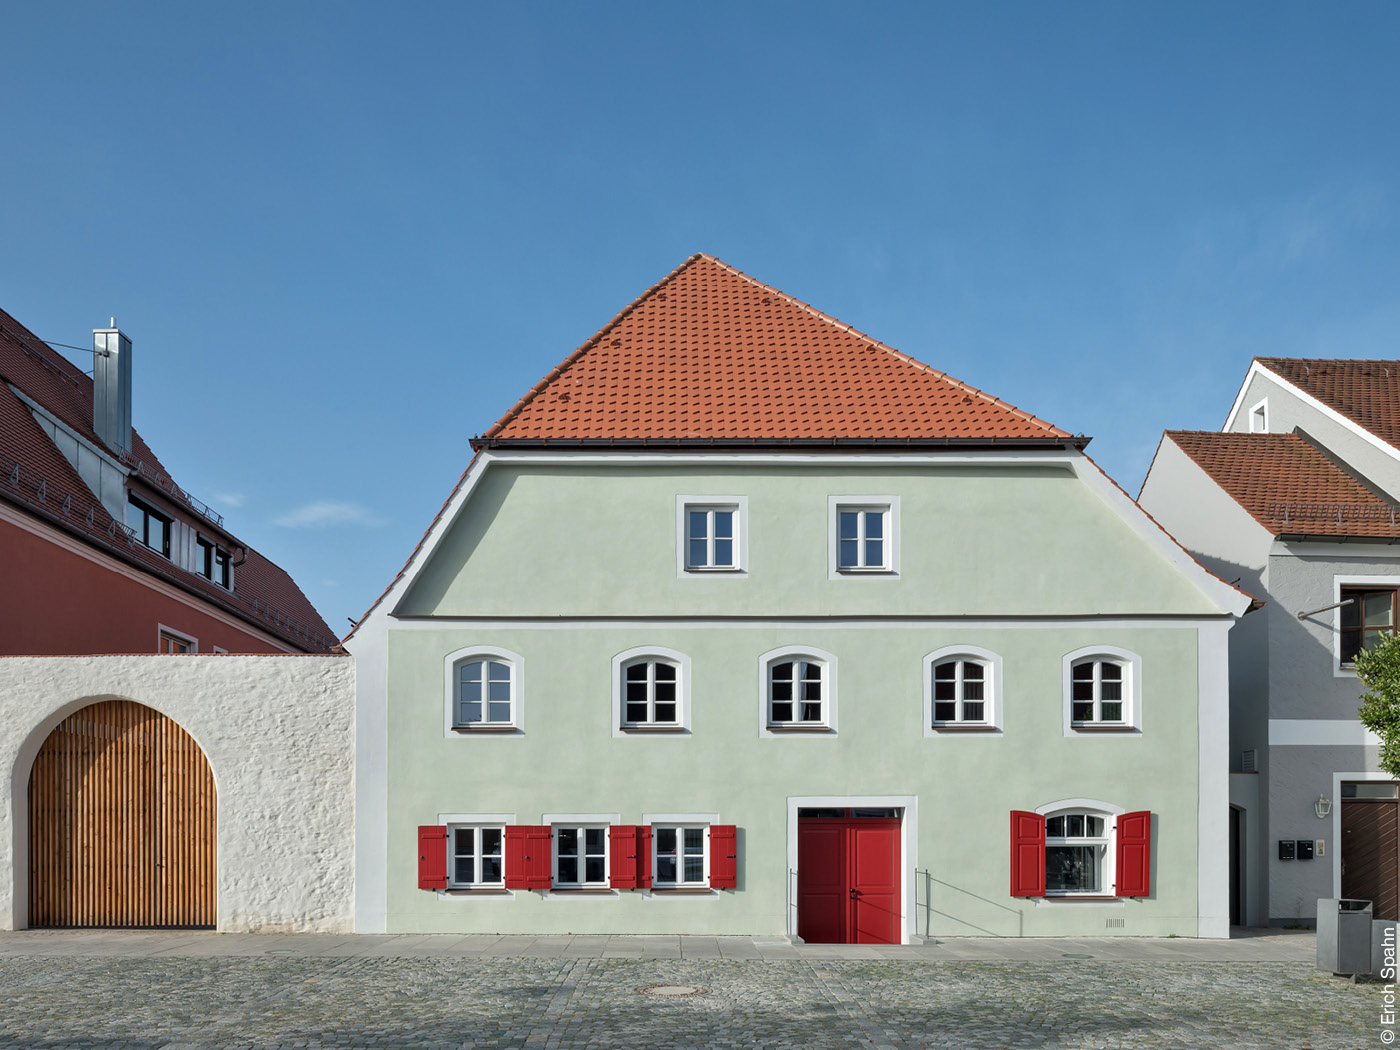 Haus mit lindgrüner Fassade und roten Fensterläden.